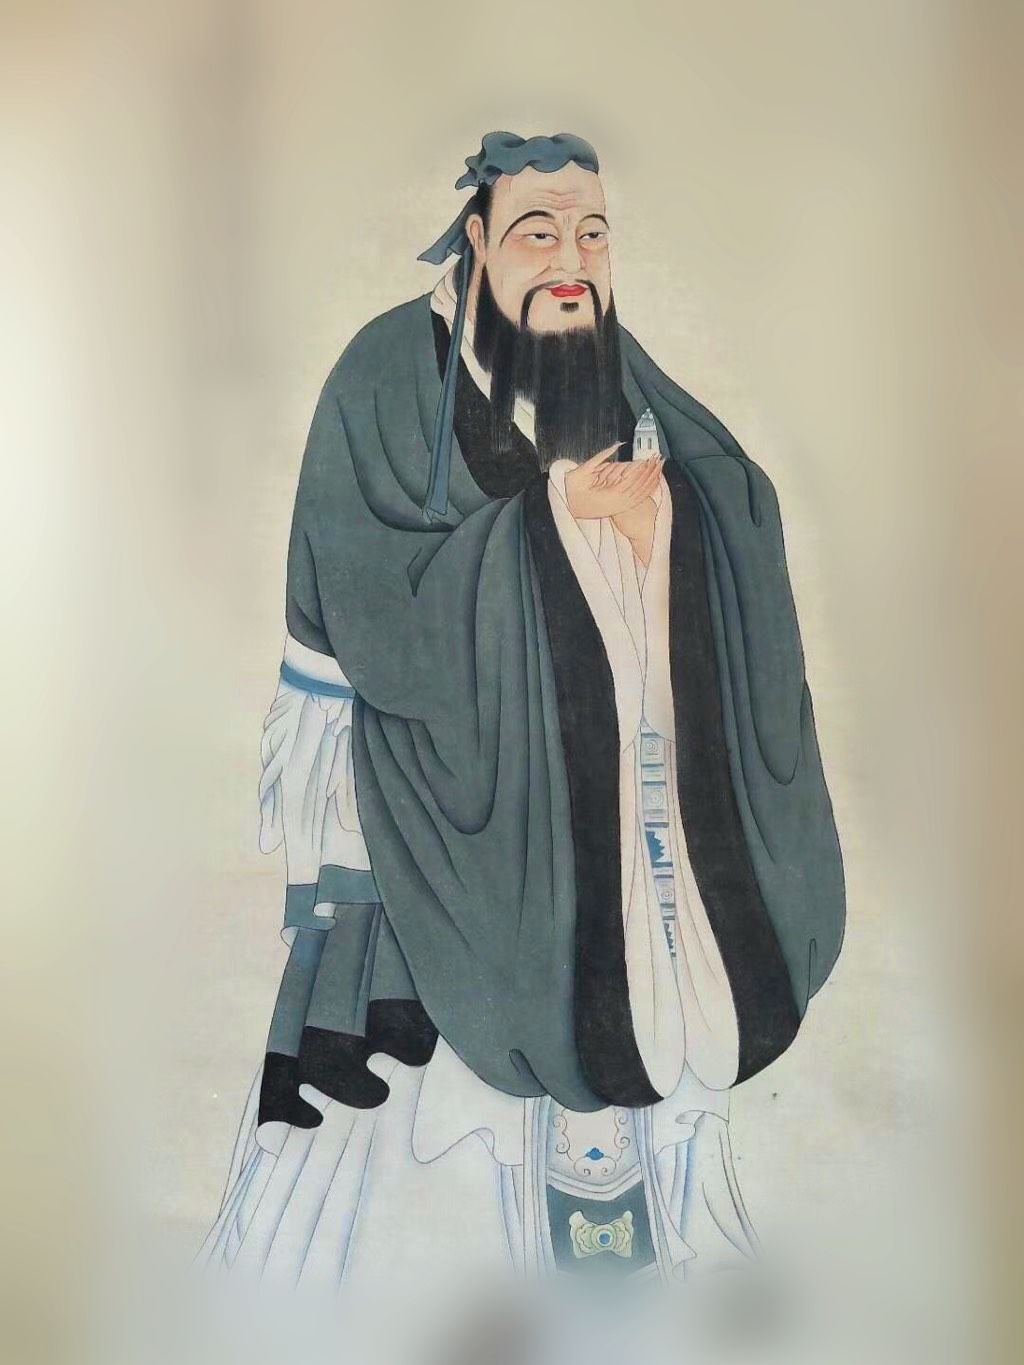 儒家思想在秦汉时期的衰落、发展与演变|千古兴衰事